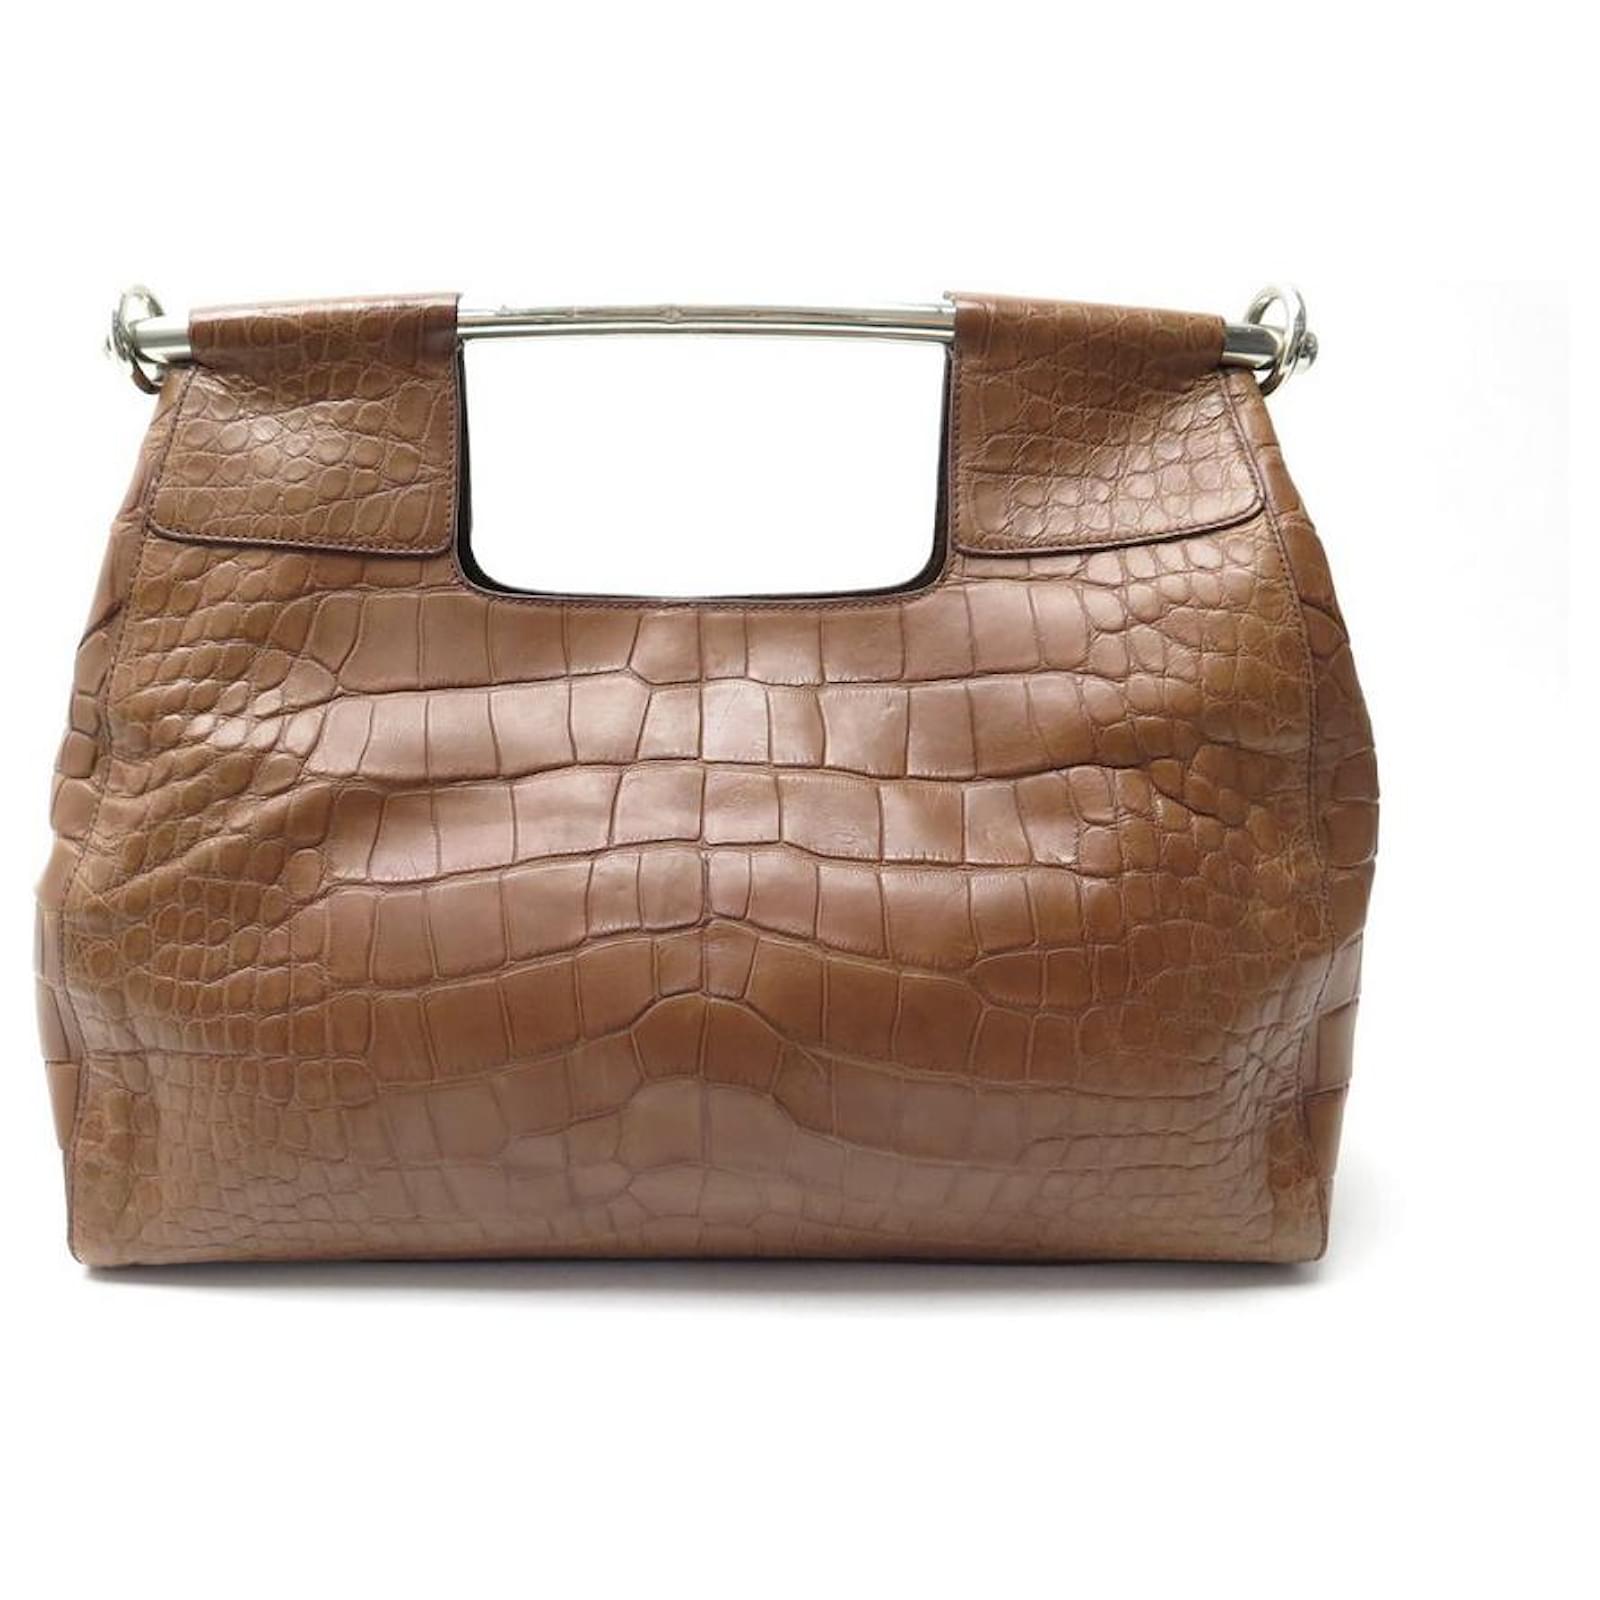 Prada - Women's Handbags Shoulder Bag - Natural - Leather